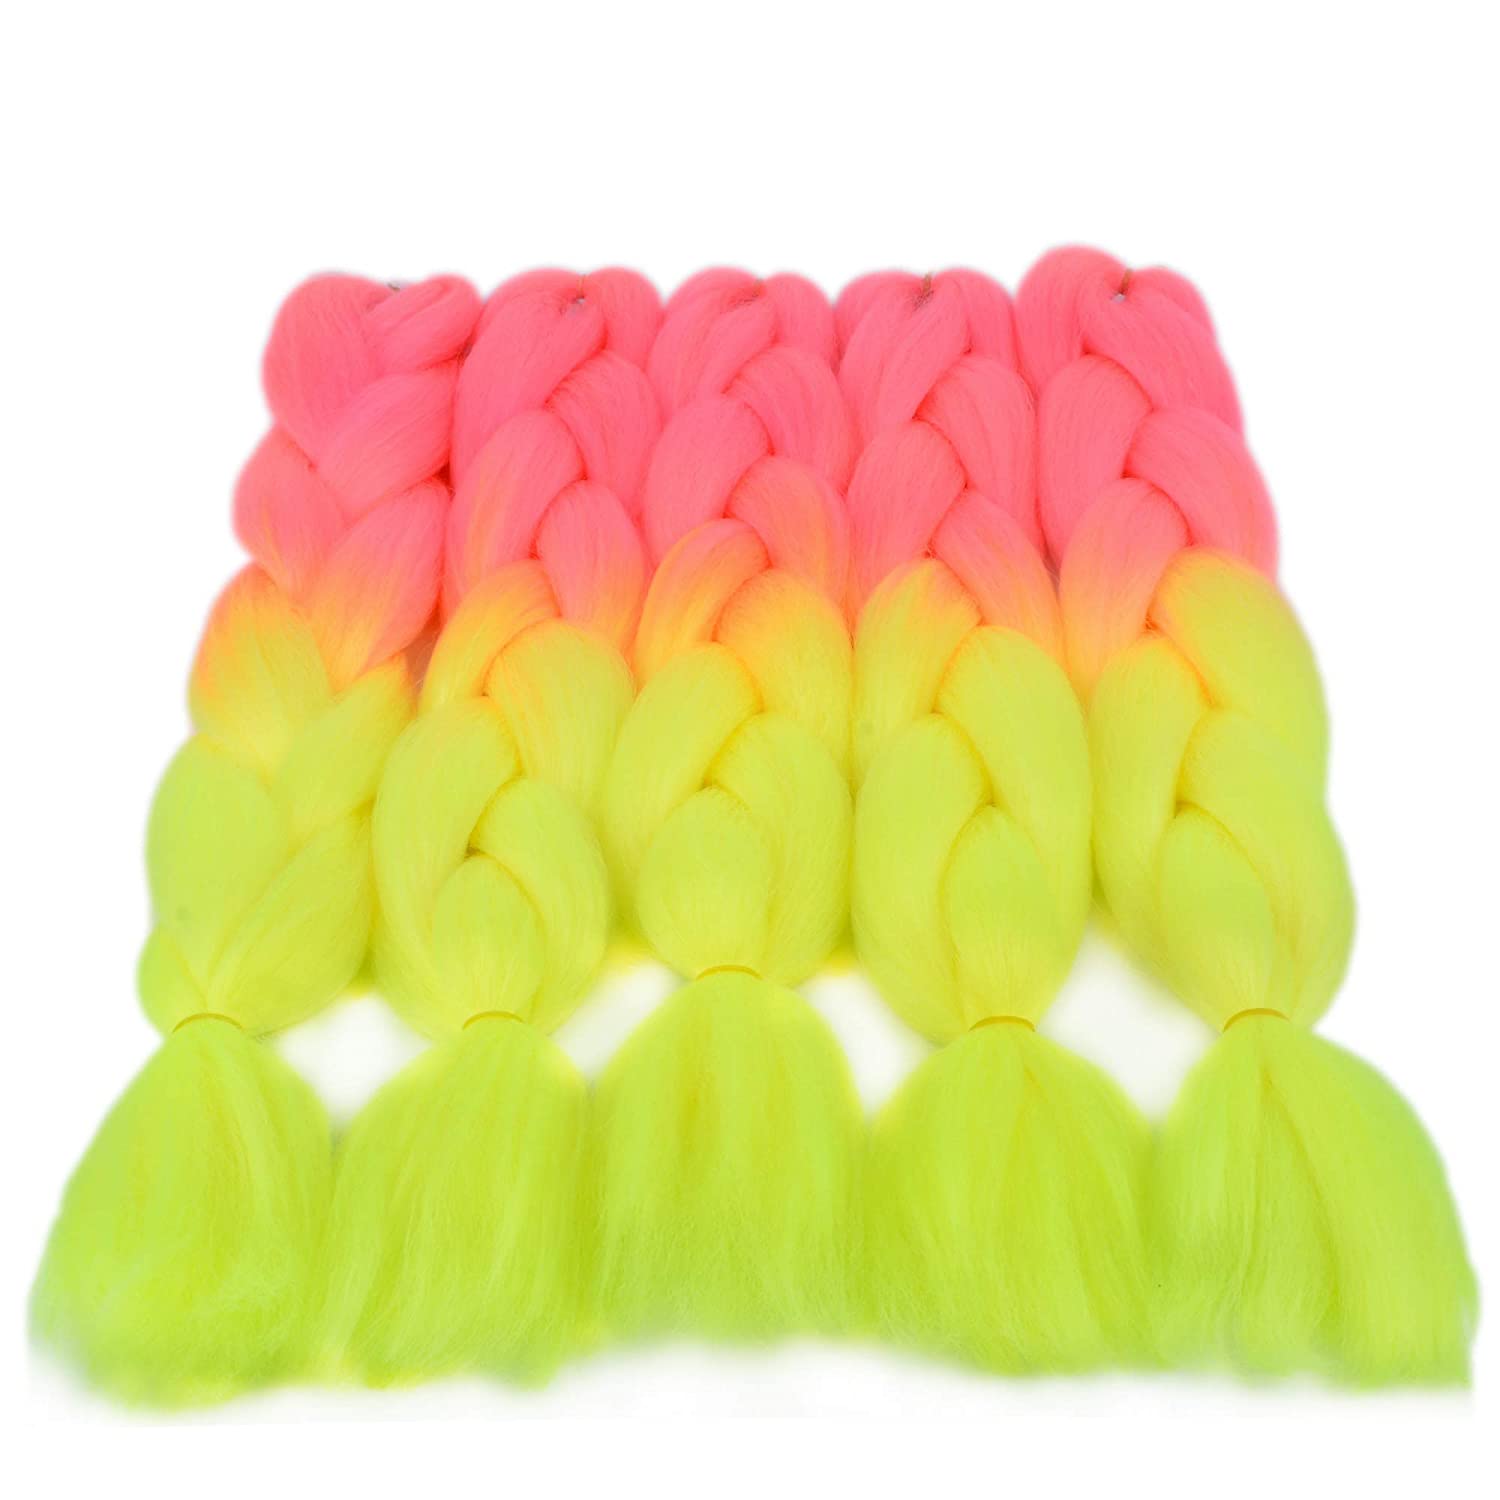  VCKOVCKO Rainbow Ombre Color Jumbo Braid Crochet